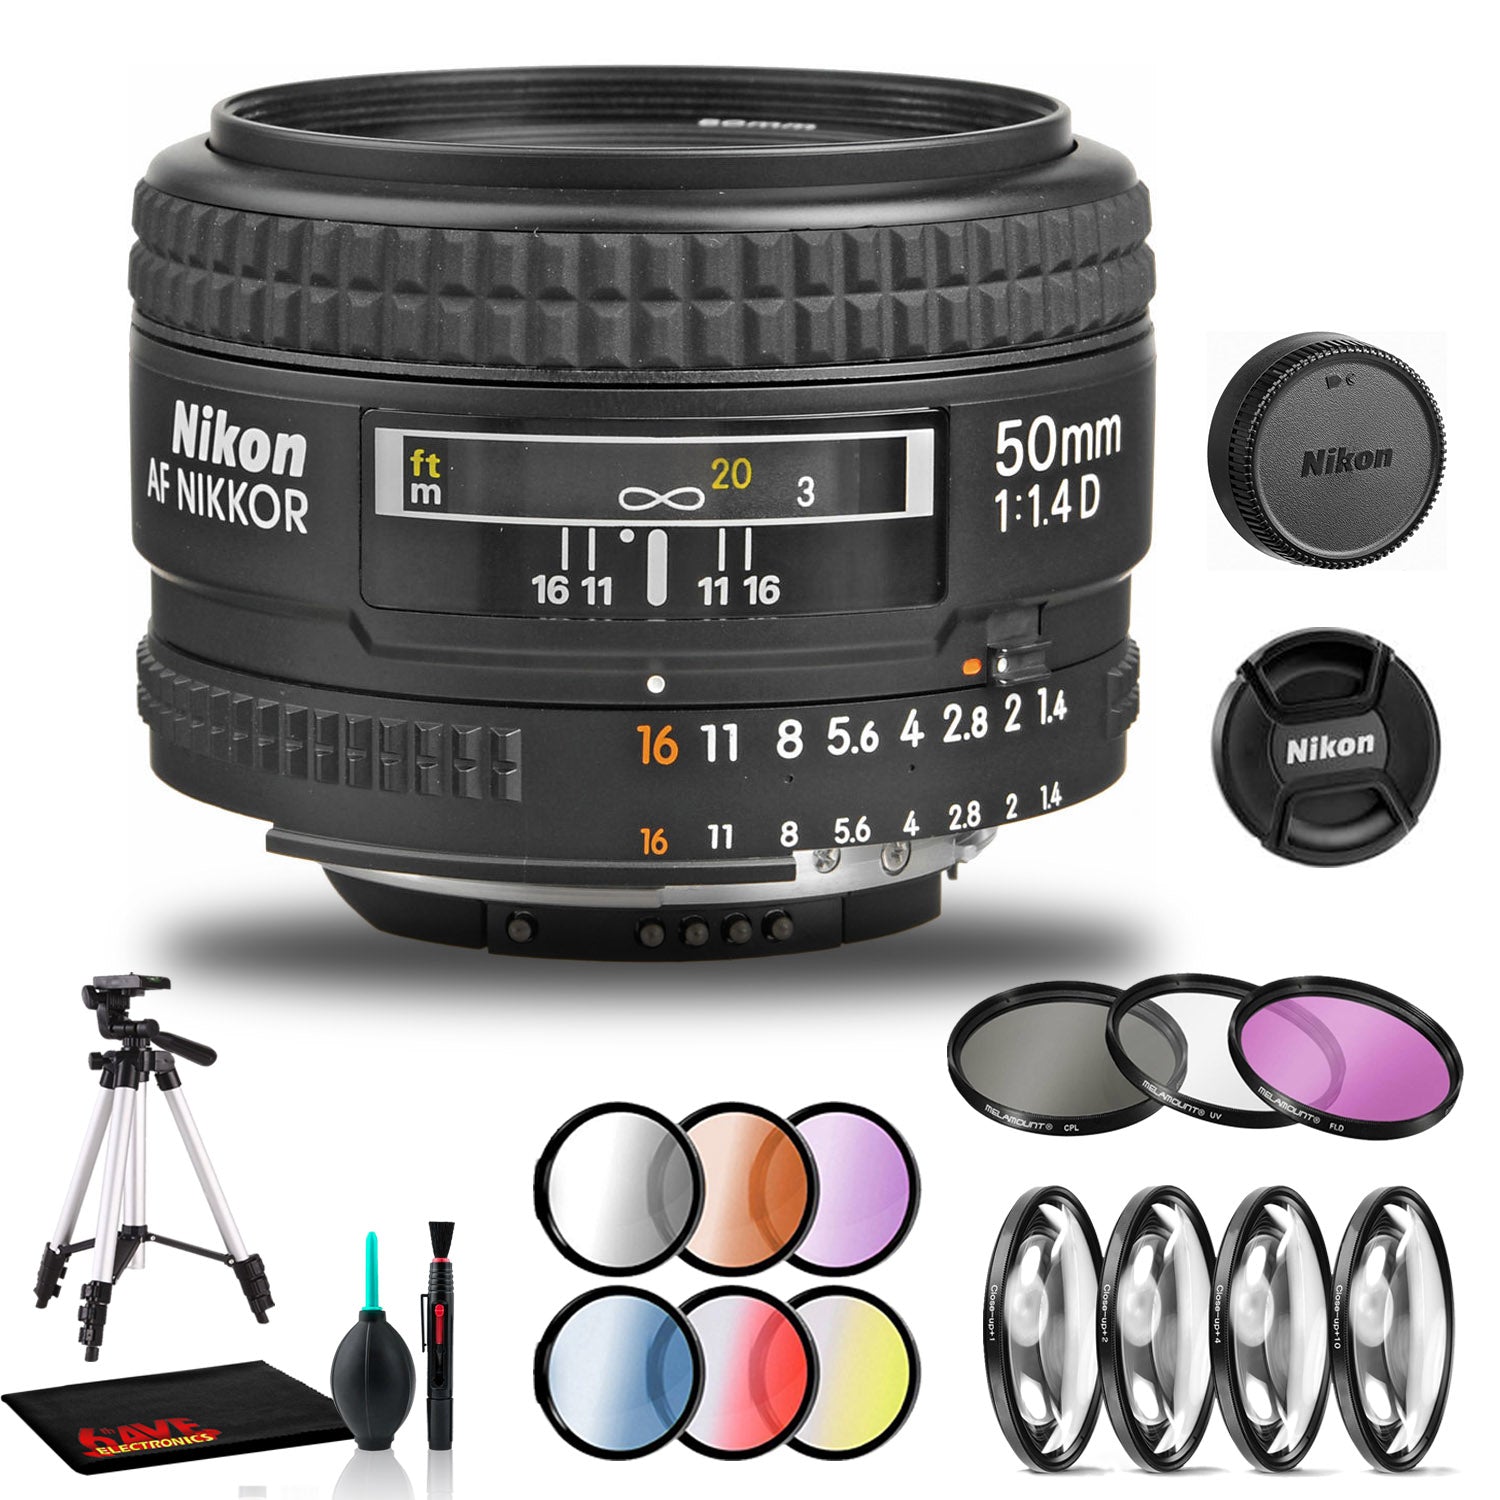 Nikon AF NIKKOR 50mm f/1.4D Lens Includes Filter Kits and Tripod (Intl Model) Bundle